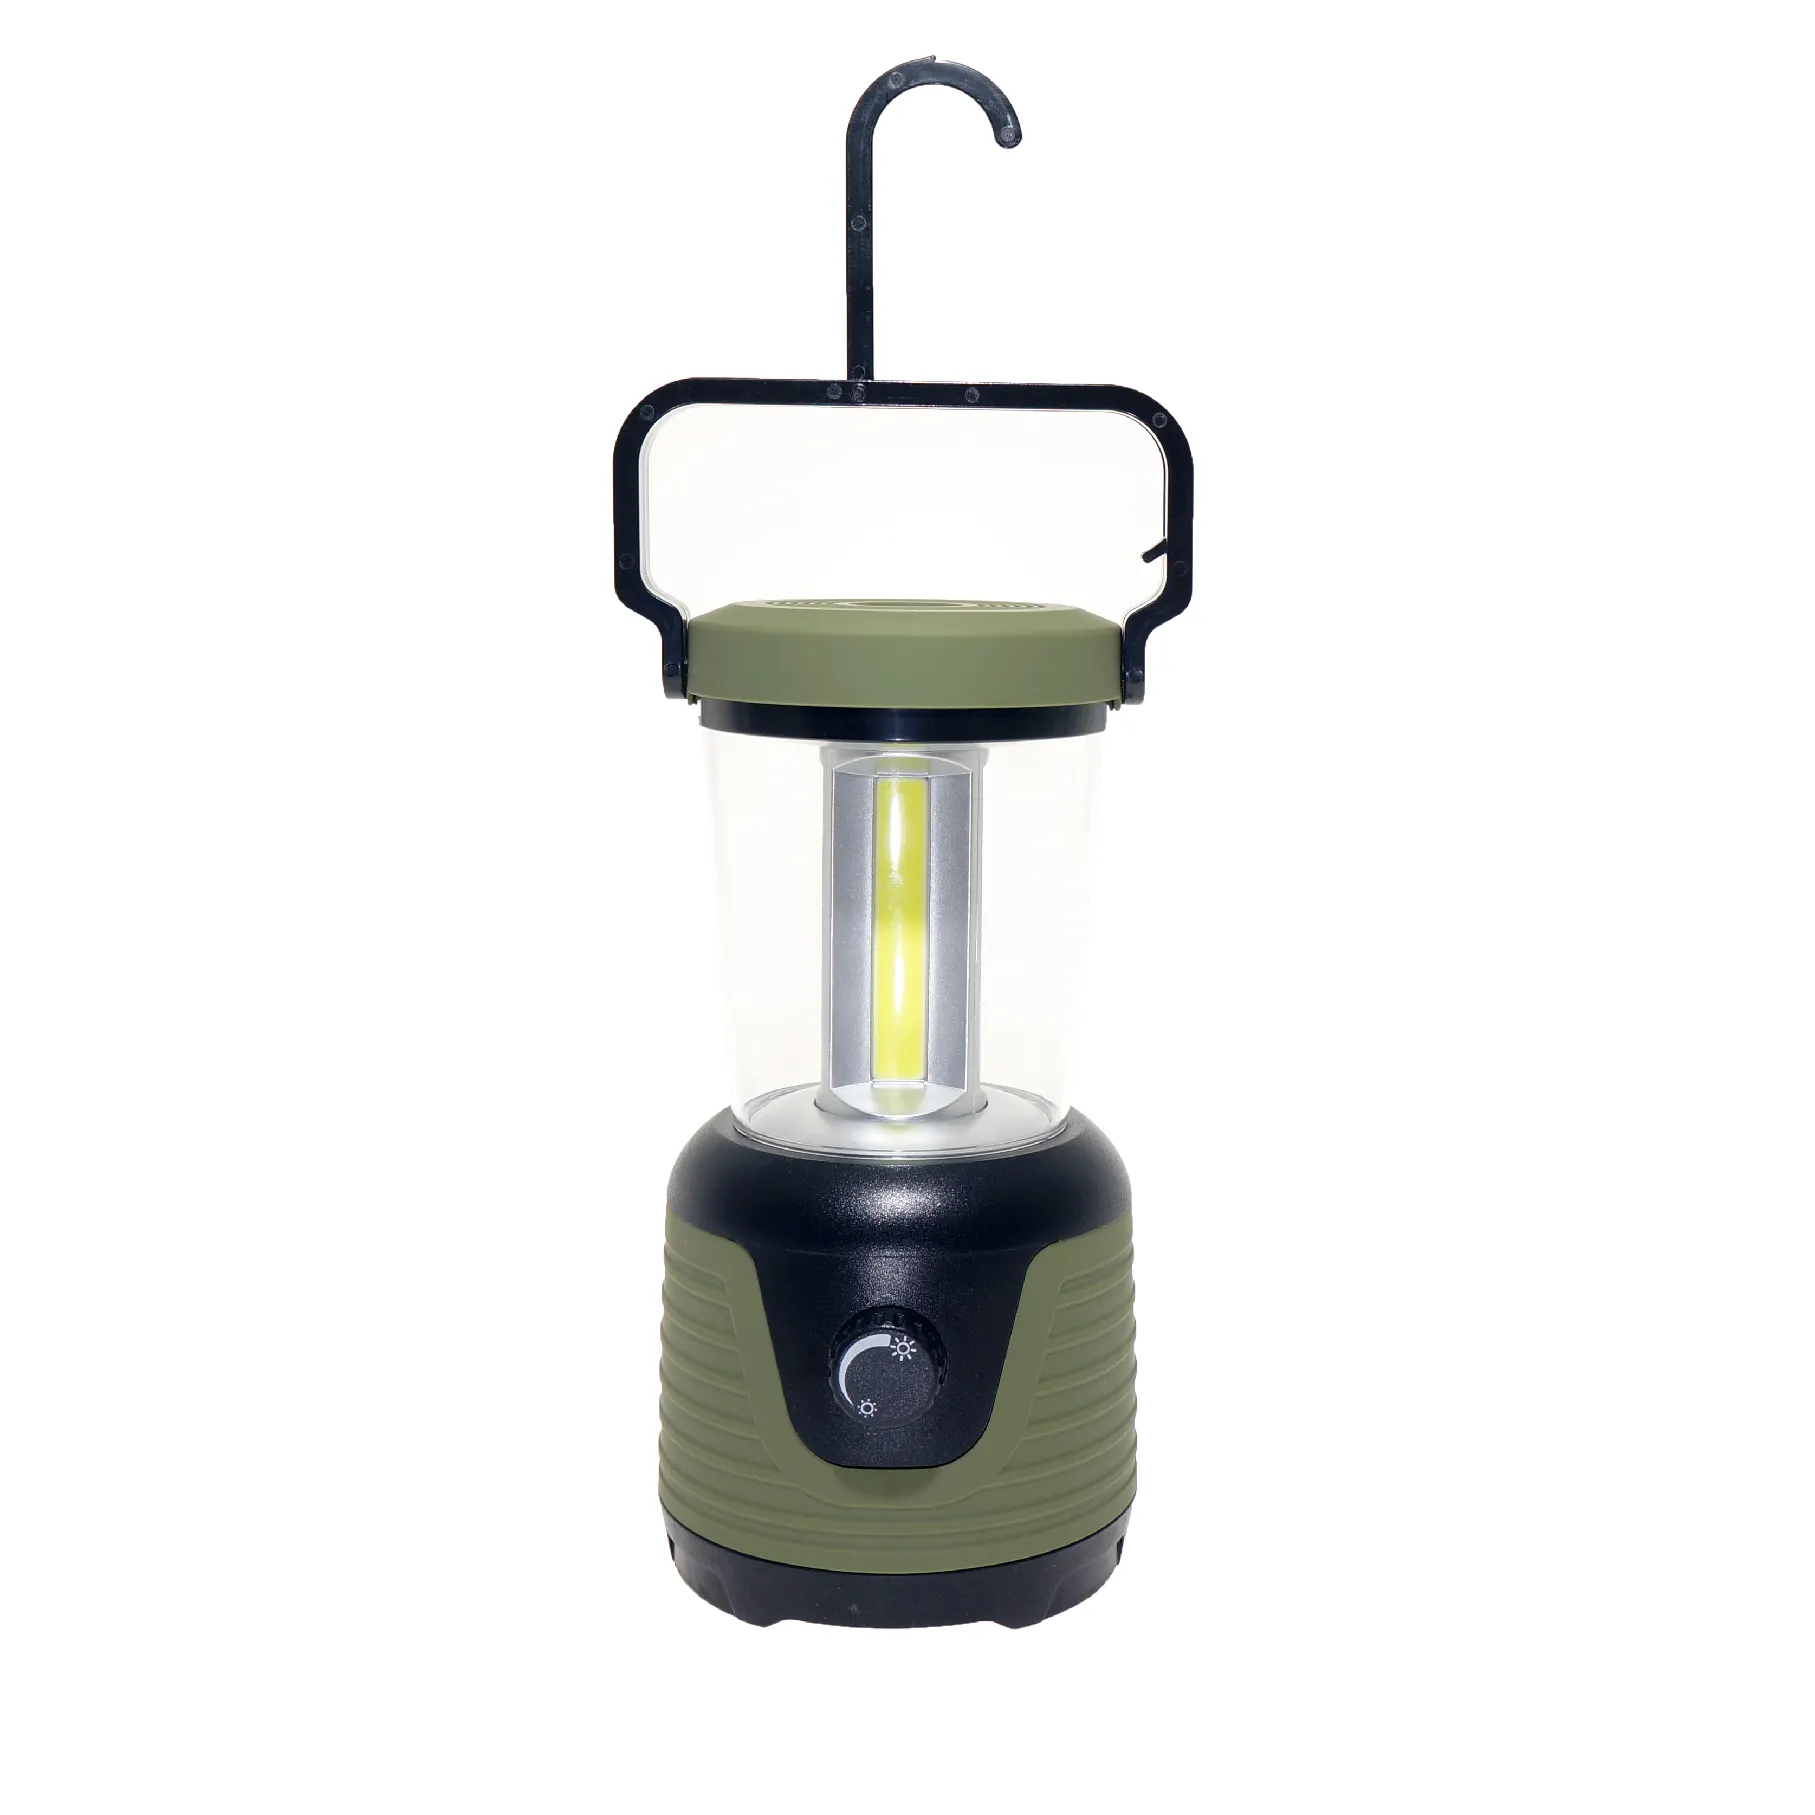 Портативный светодиодный фонарь 360 лм с аккумулятором 3D, COB, уличный фонарь для кемпинга, кемпинга, ночного туризма, освещение для палатки